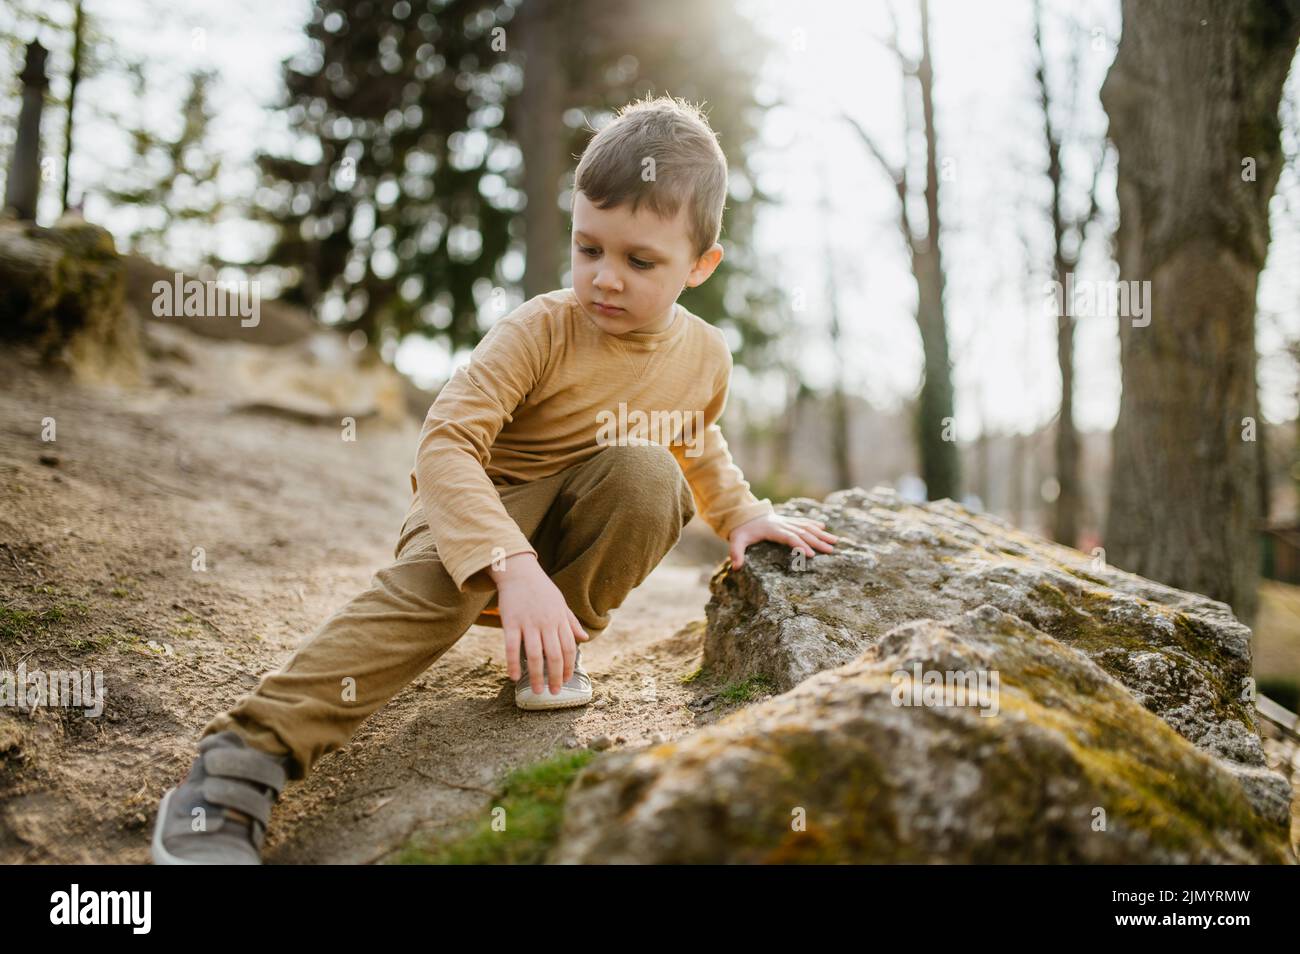 Portrait of cute curious little boy in nautre, autumn concept. Stock Photo